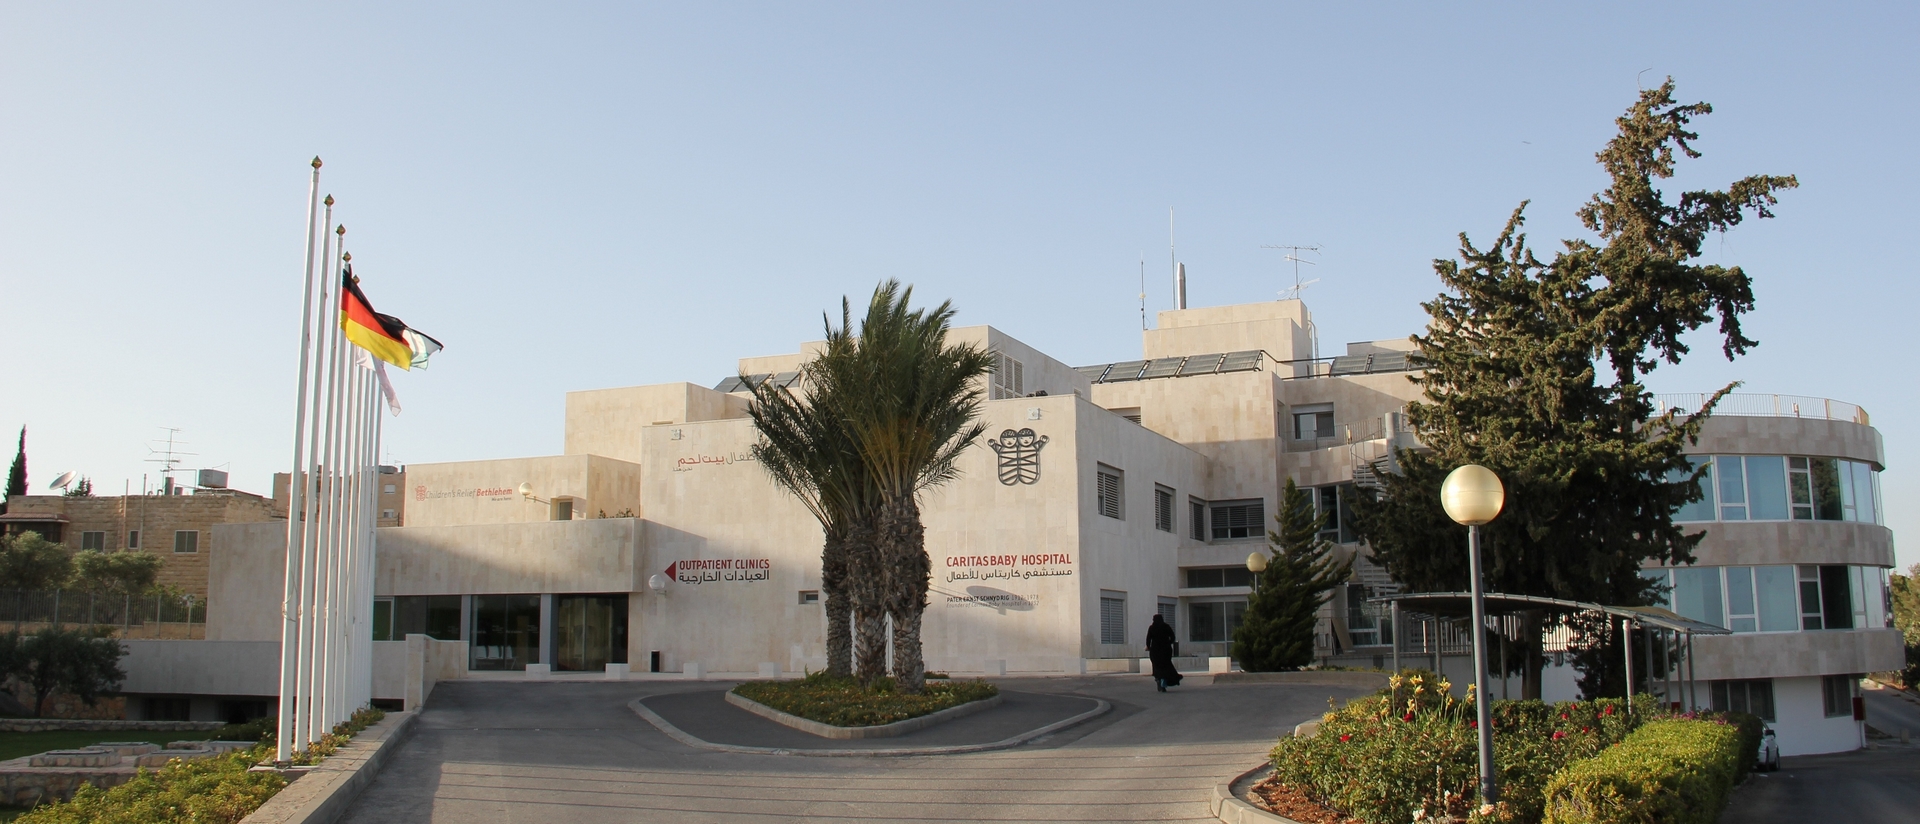 Le Caritas Baby Hospital de Bethéem est une importante institution chrétienne de Palestine | Wikimedia commons CC-BY-SA-2.0